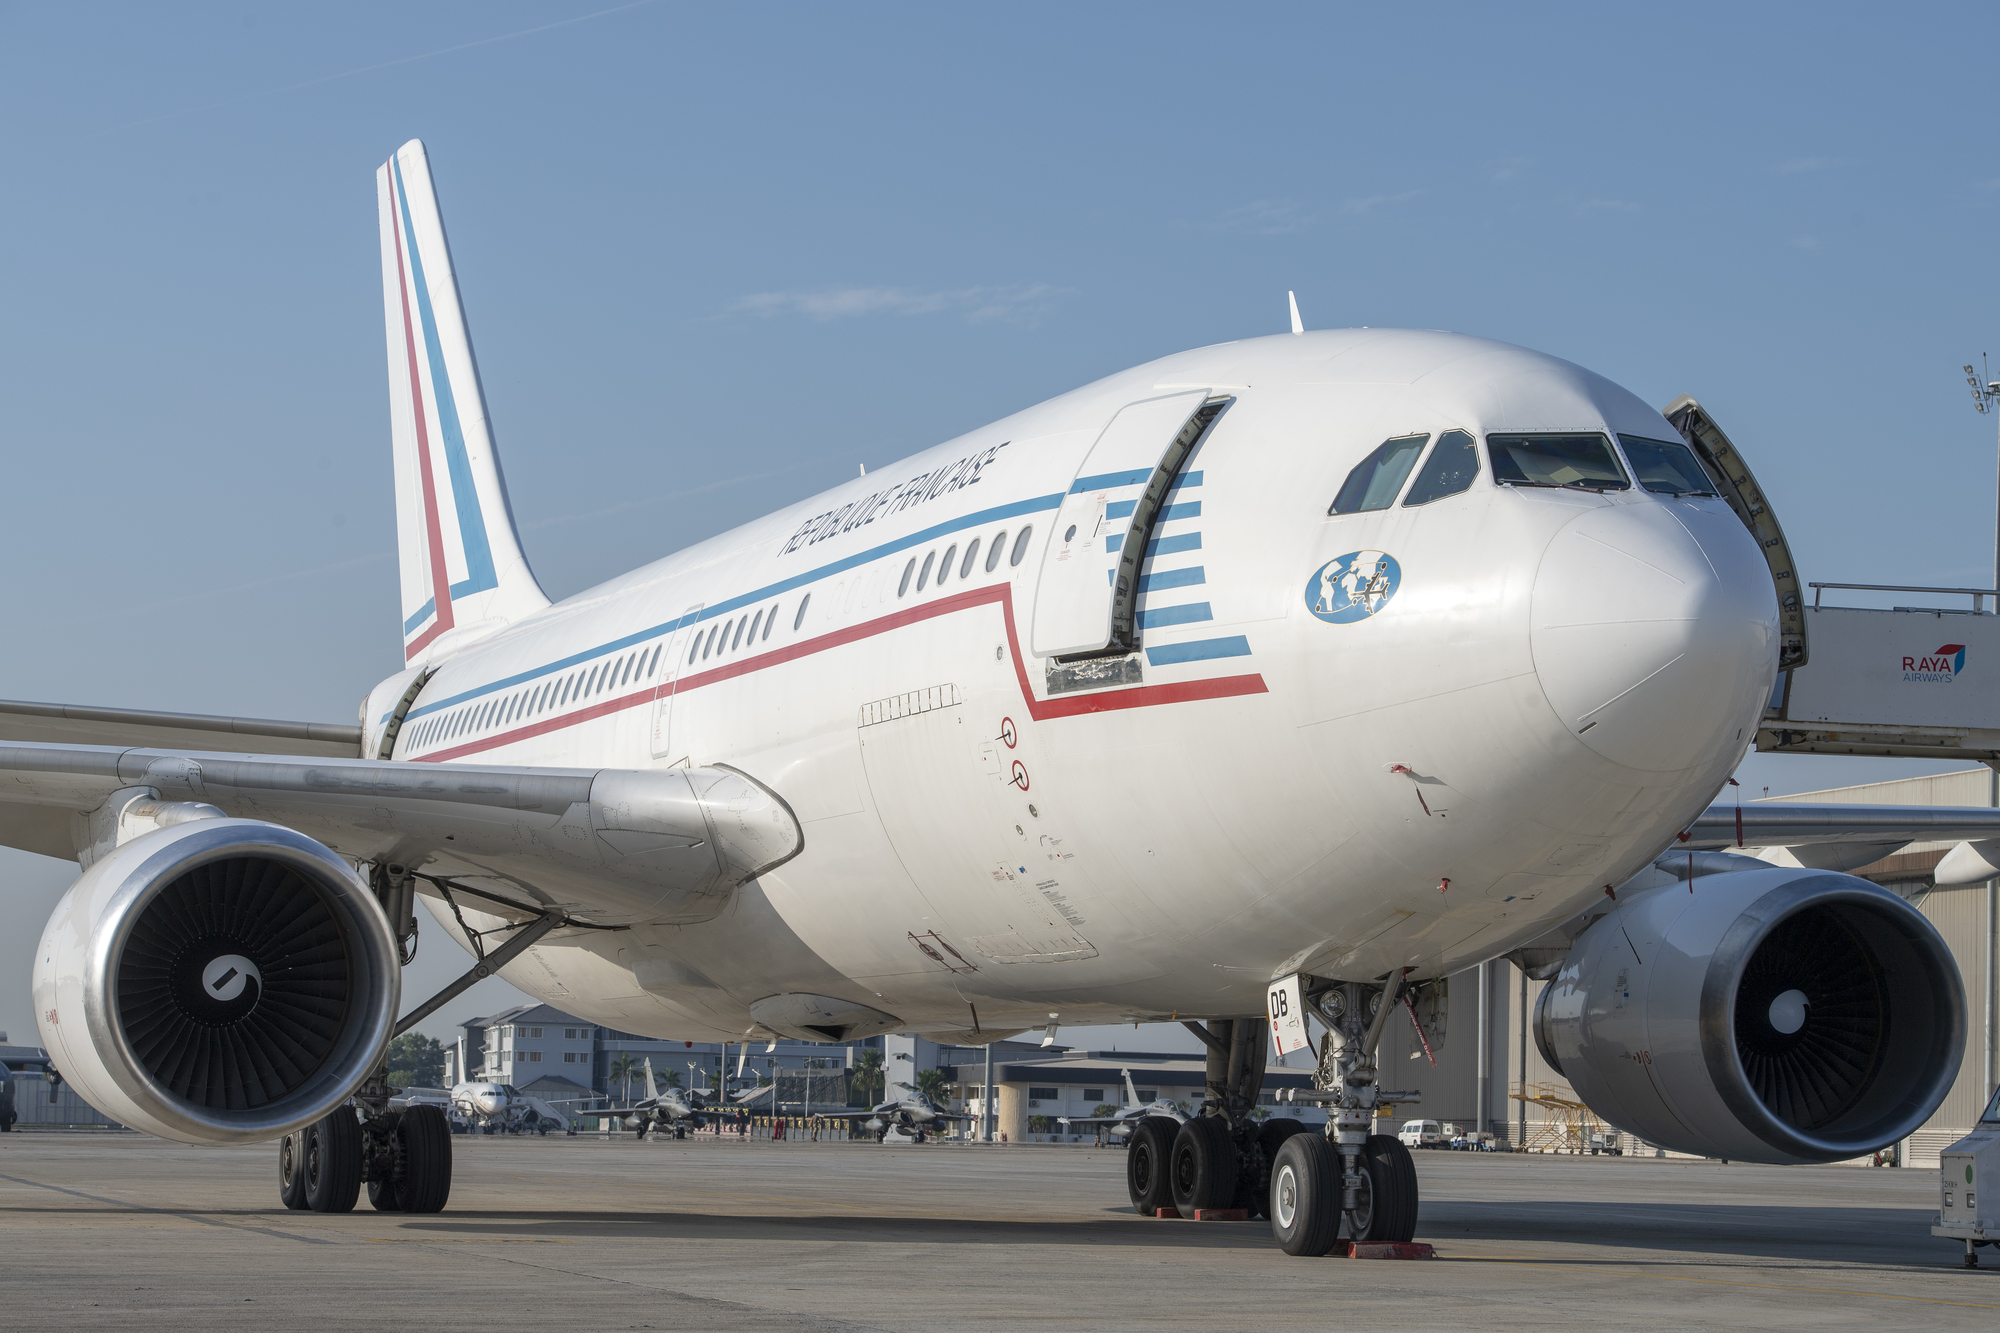  - Opération APAGAN – Arrivée de ressortissants français et étrangers à l'aéroport Roissy Charles-de-Gaulle le mardi 17 août 2021